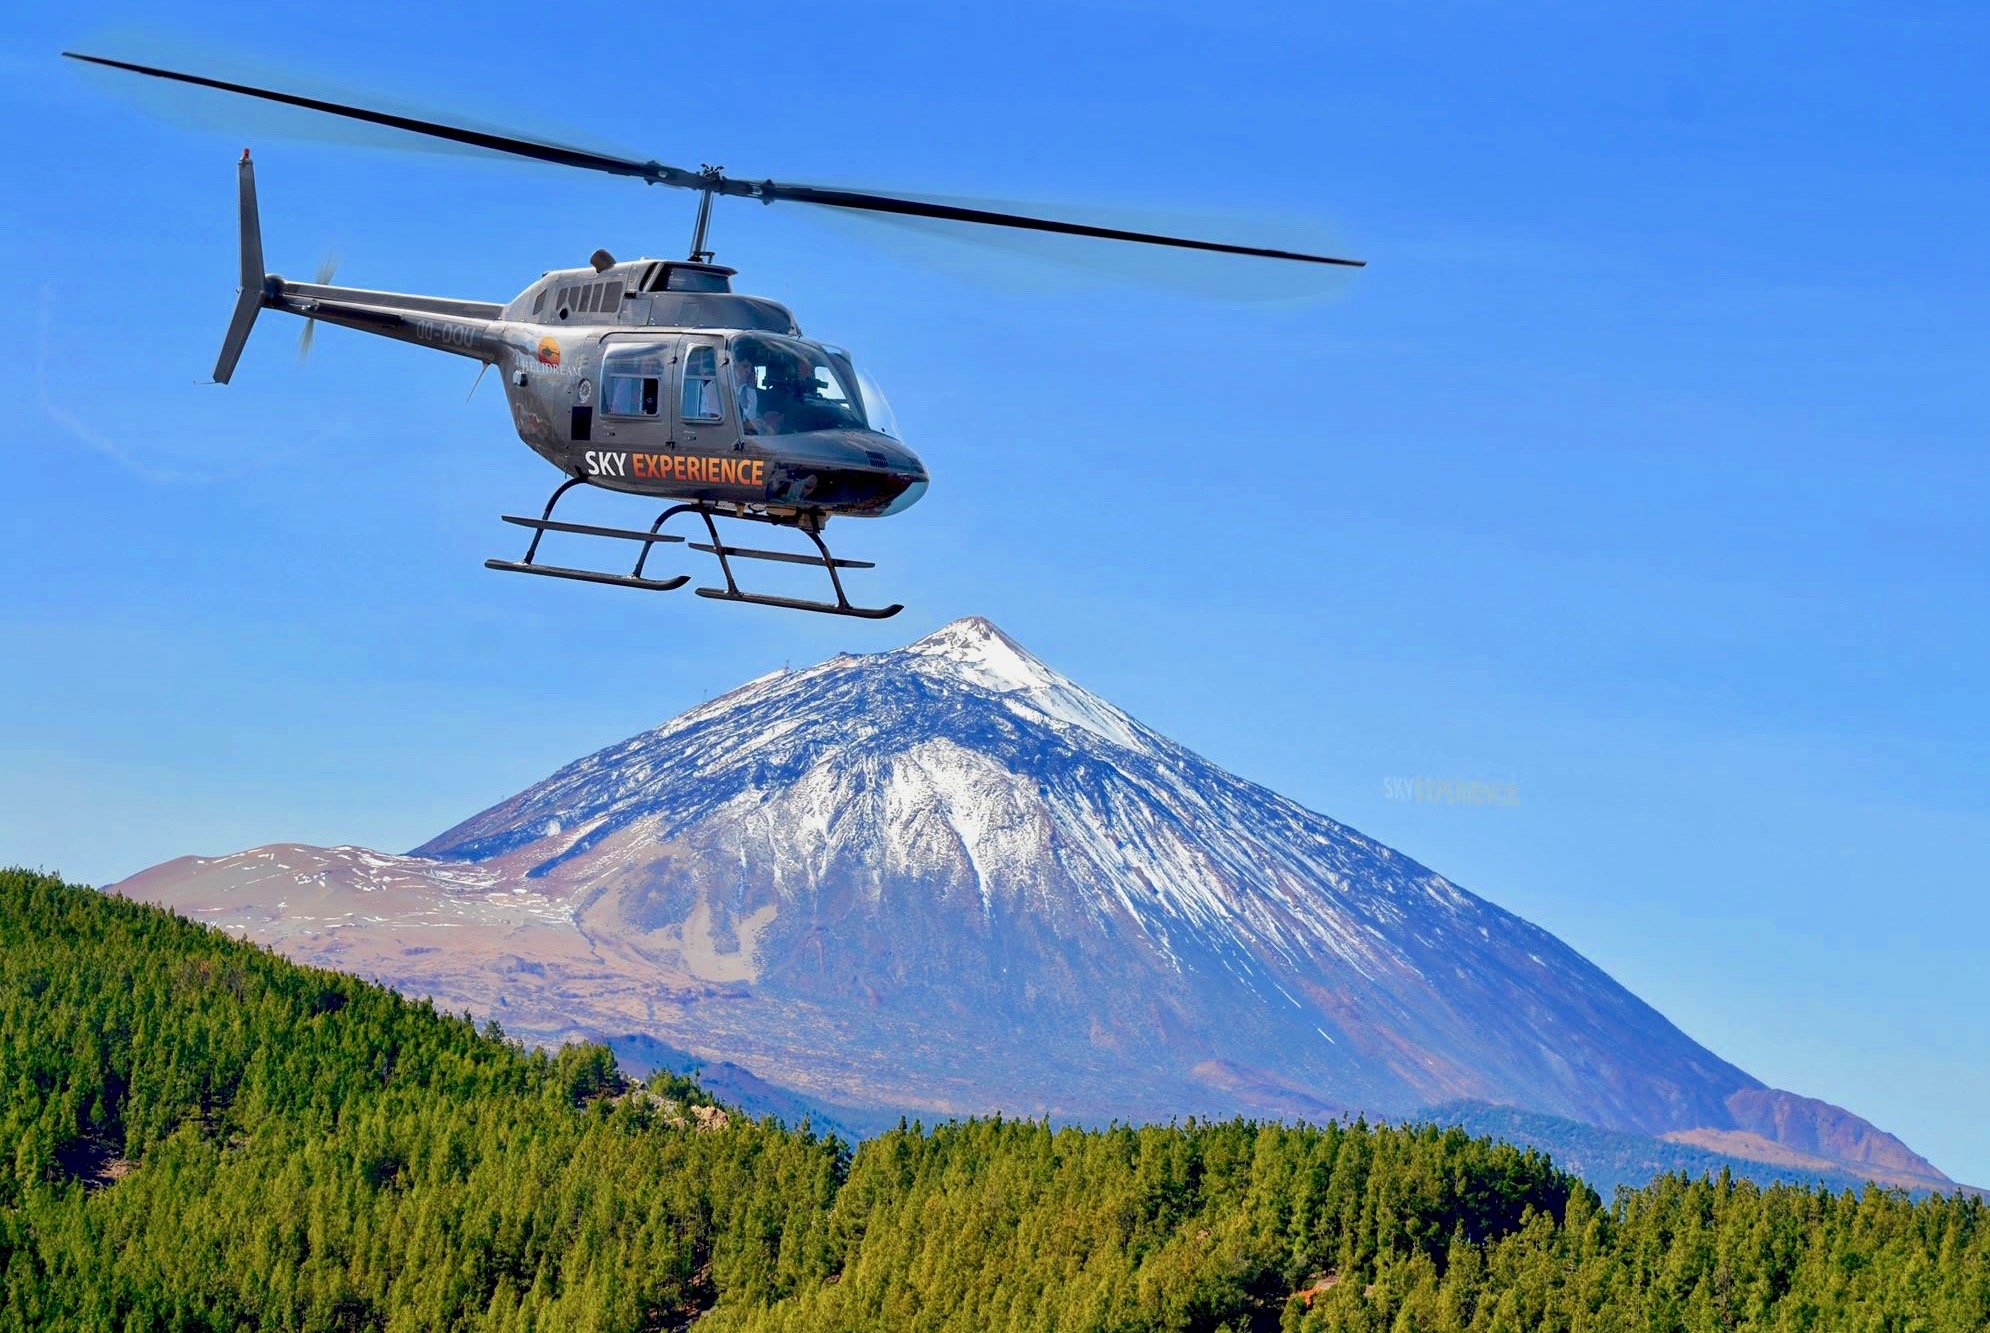 Increíble vista al pico del Teide cubierto de nieve en una excursión en helicóptero